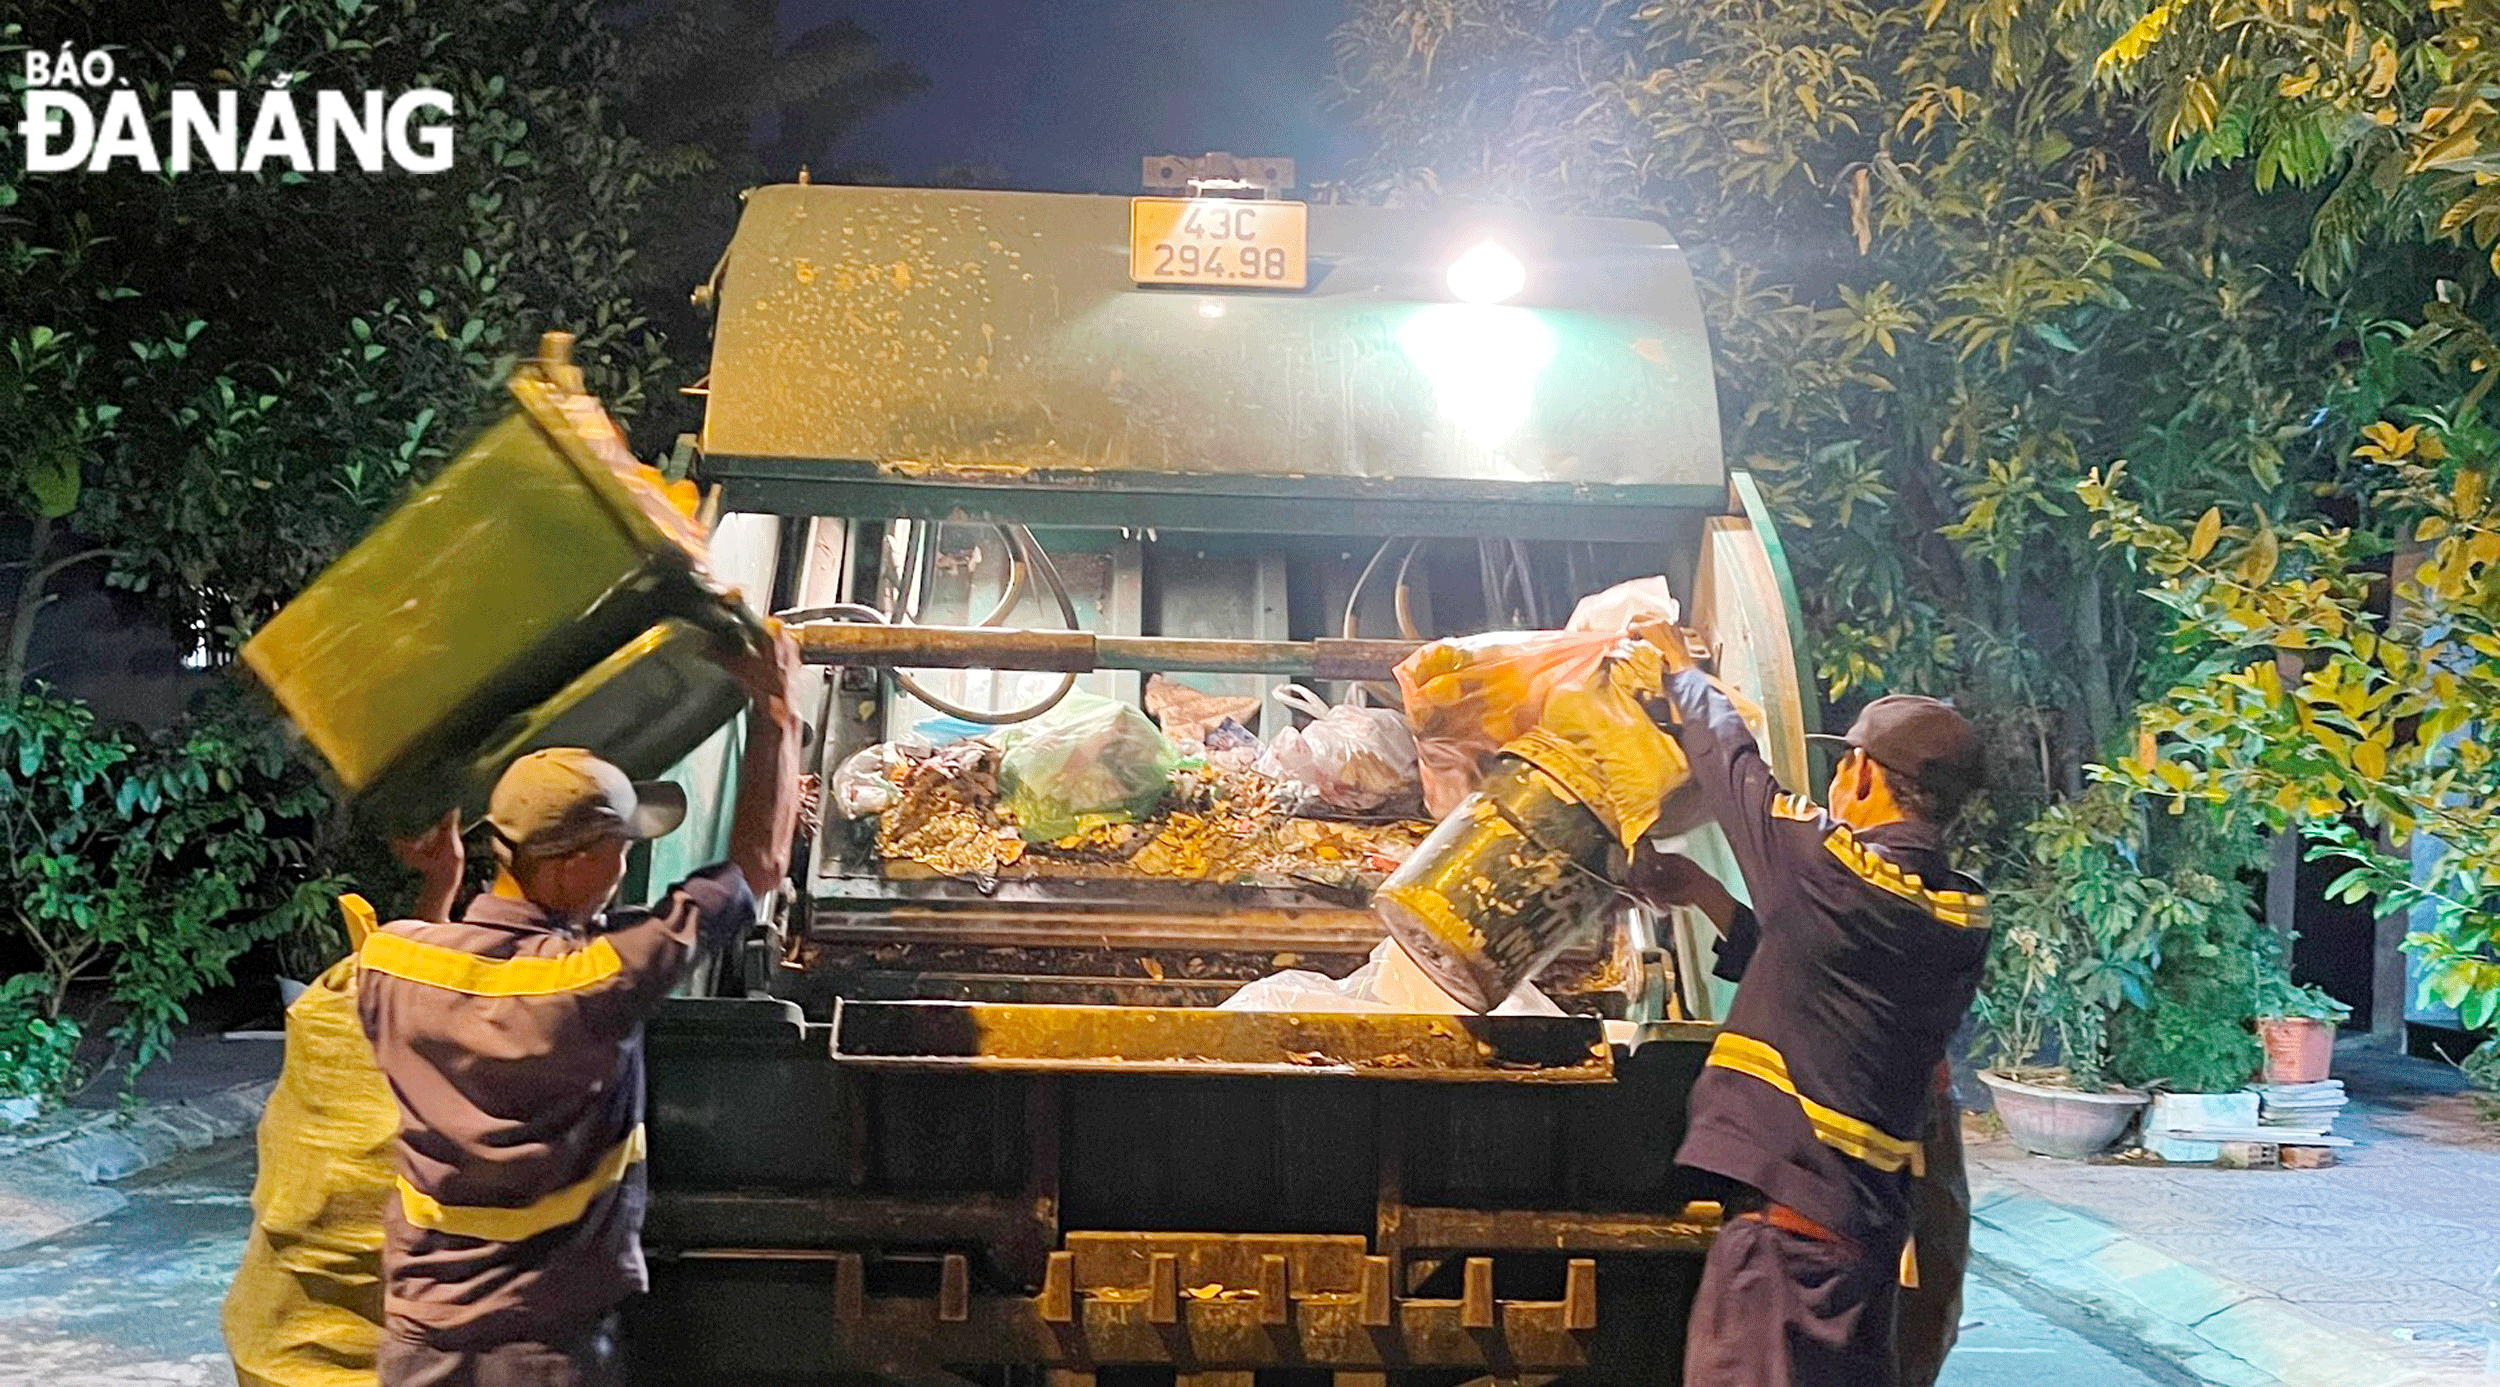 Thu gom rác sinh hoạt, vệ sinh đường phố ở phường Hòa Xuân vào ban đêm